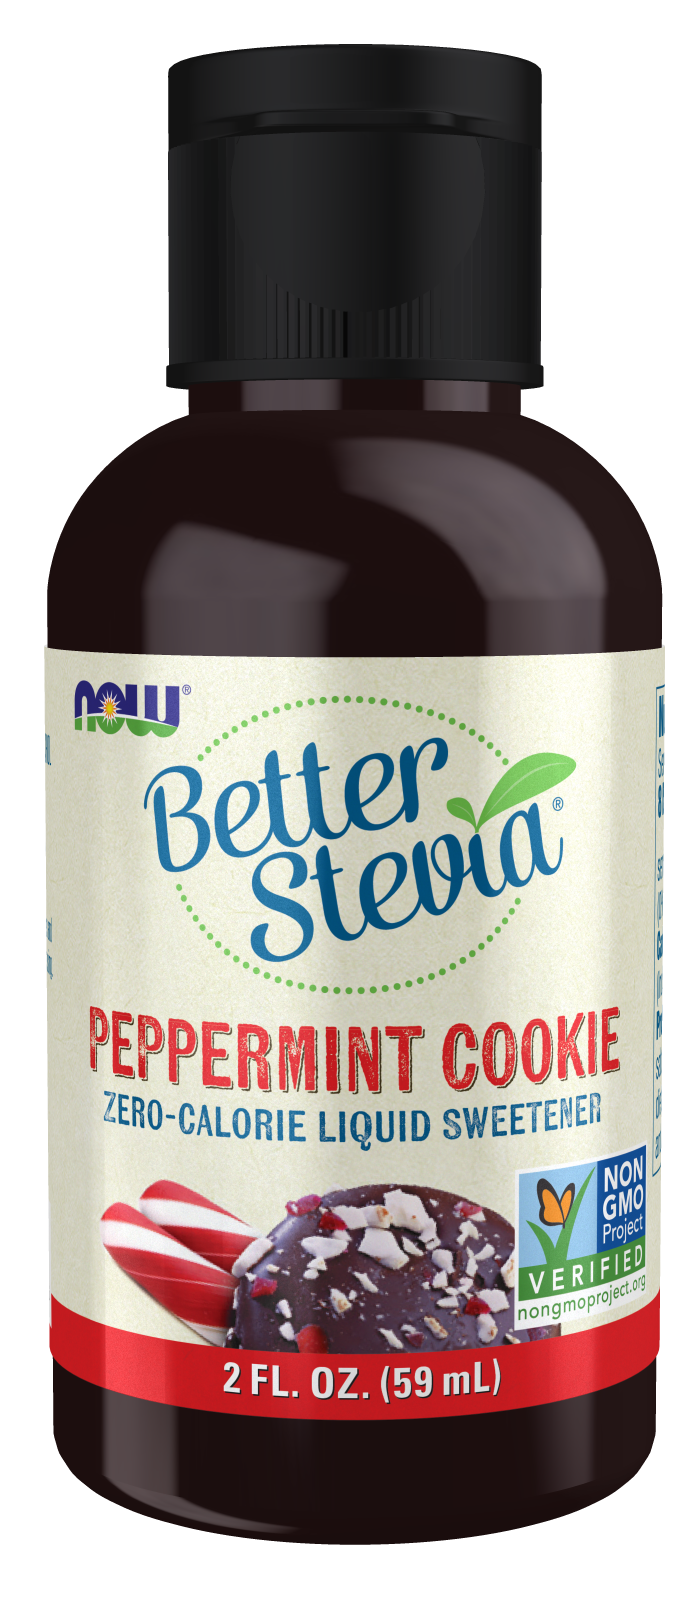 BetterStevia® Liquid, Peppermint Cookie - 2 fl. oz. bottle front